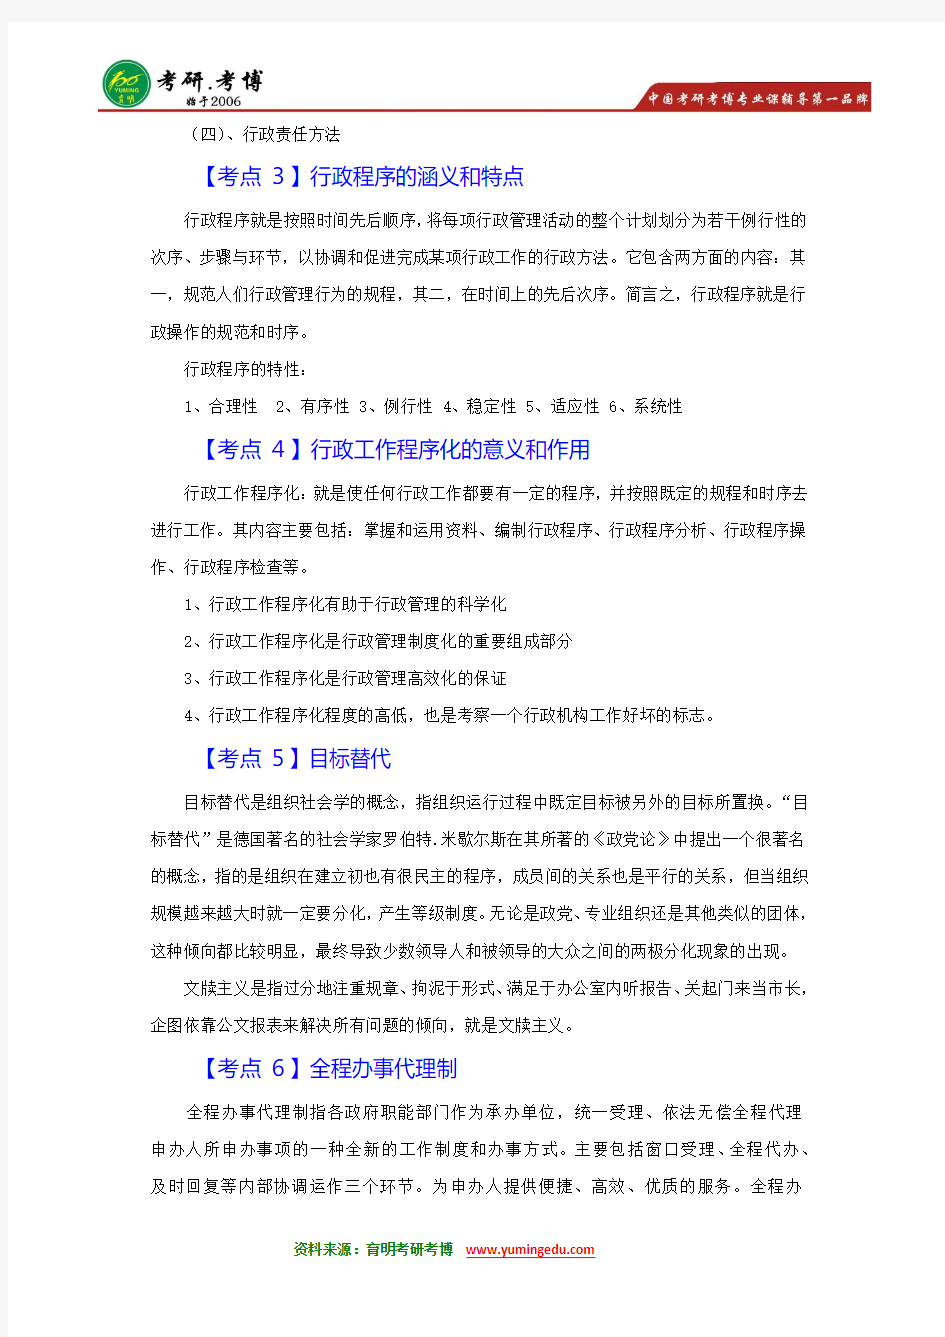 【内部资料】2016年北京大学行政管理考研参考书目重点解析-